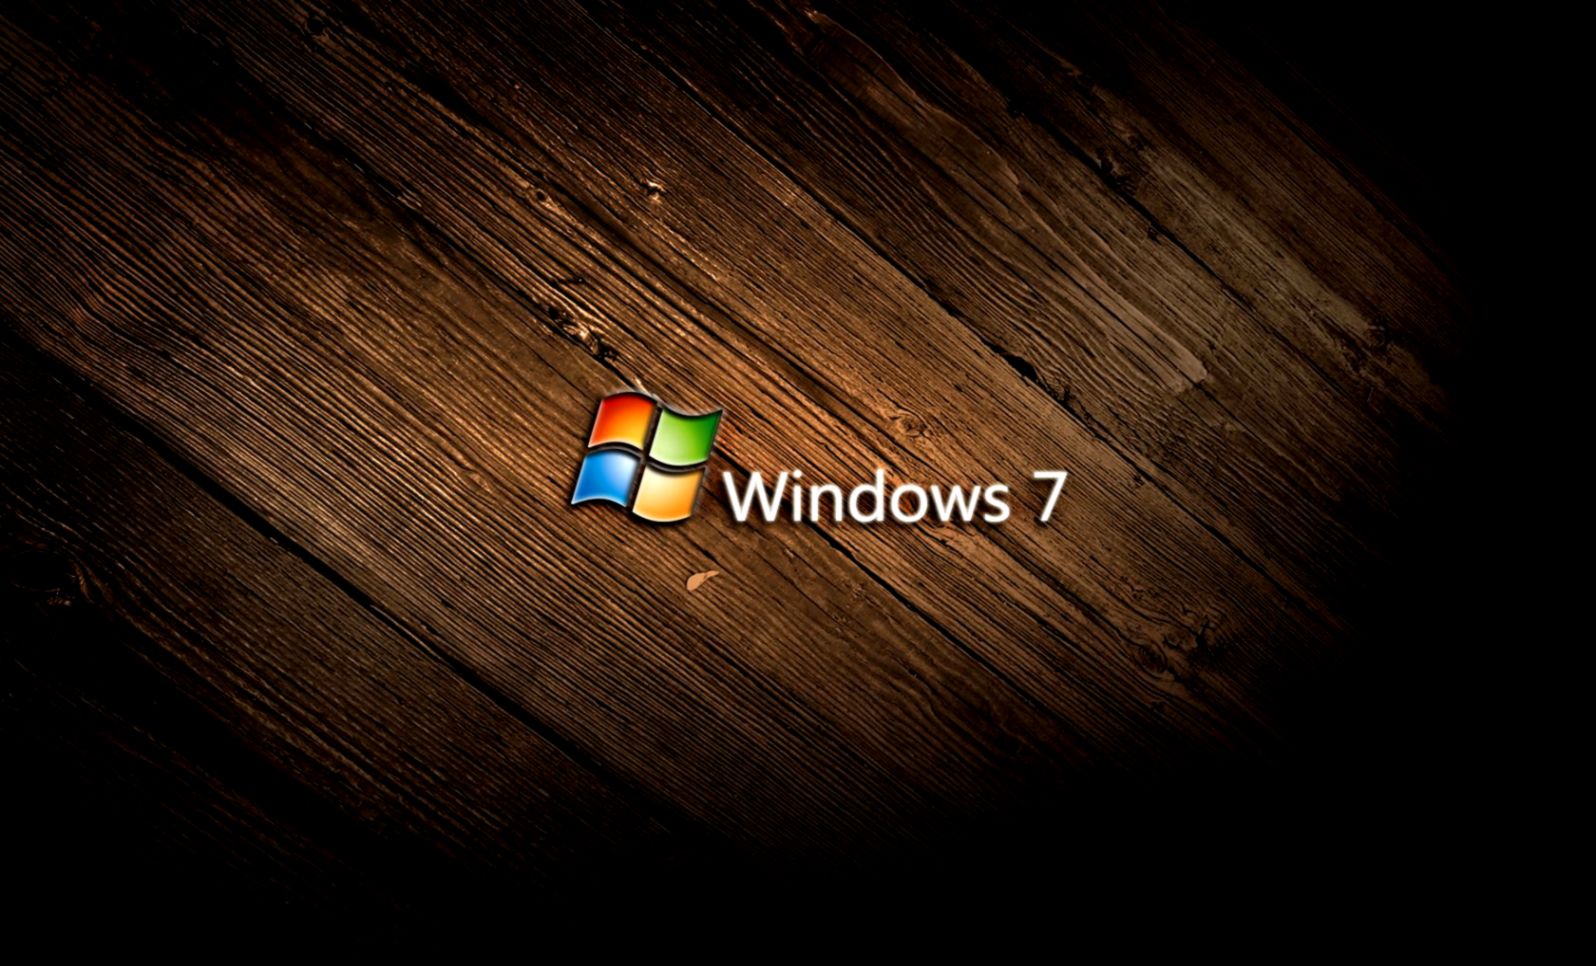 Hình nền Windows 7 sẽ đem lại cho bạn cảm giác quen thuộc và thân thiết khi sử dụng máy tính. Hãy khám phá ngay những hình nền chất lượng cao để mang lại cho màn hình của bạn sự độc đáo và ấn tượng nhất.